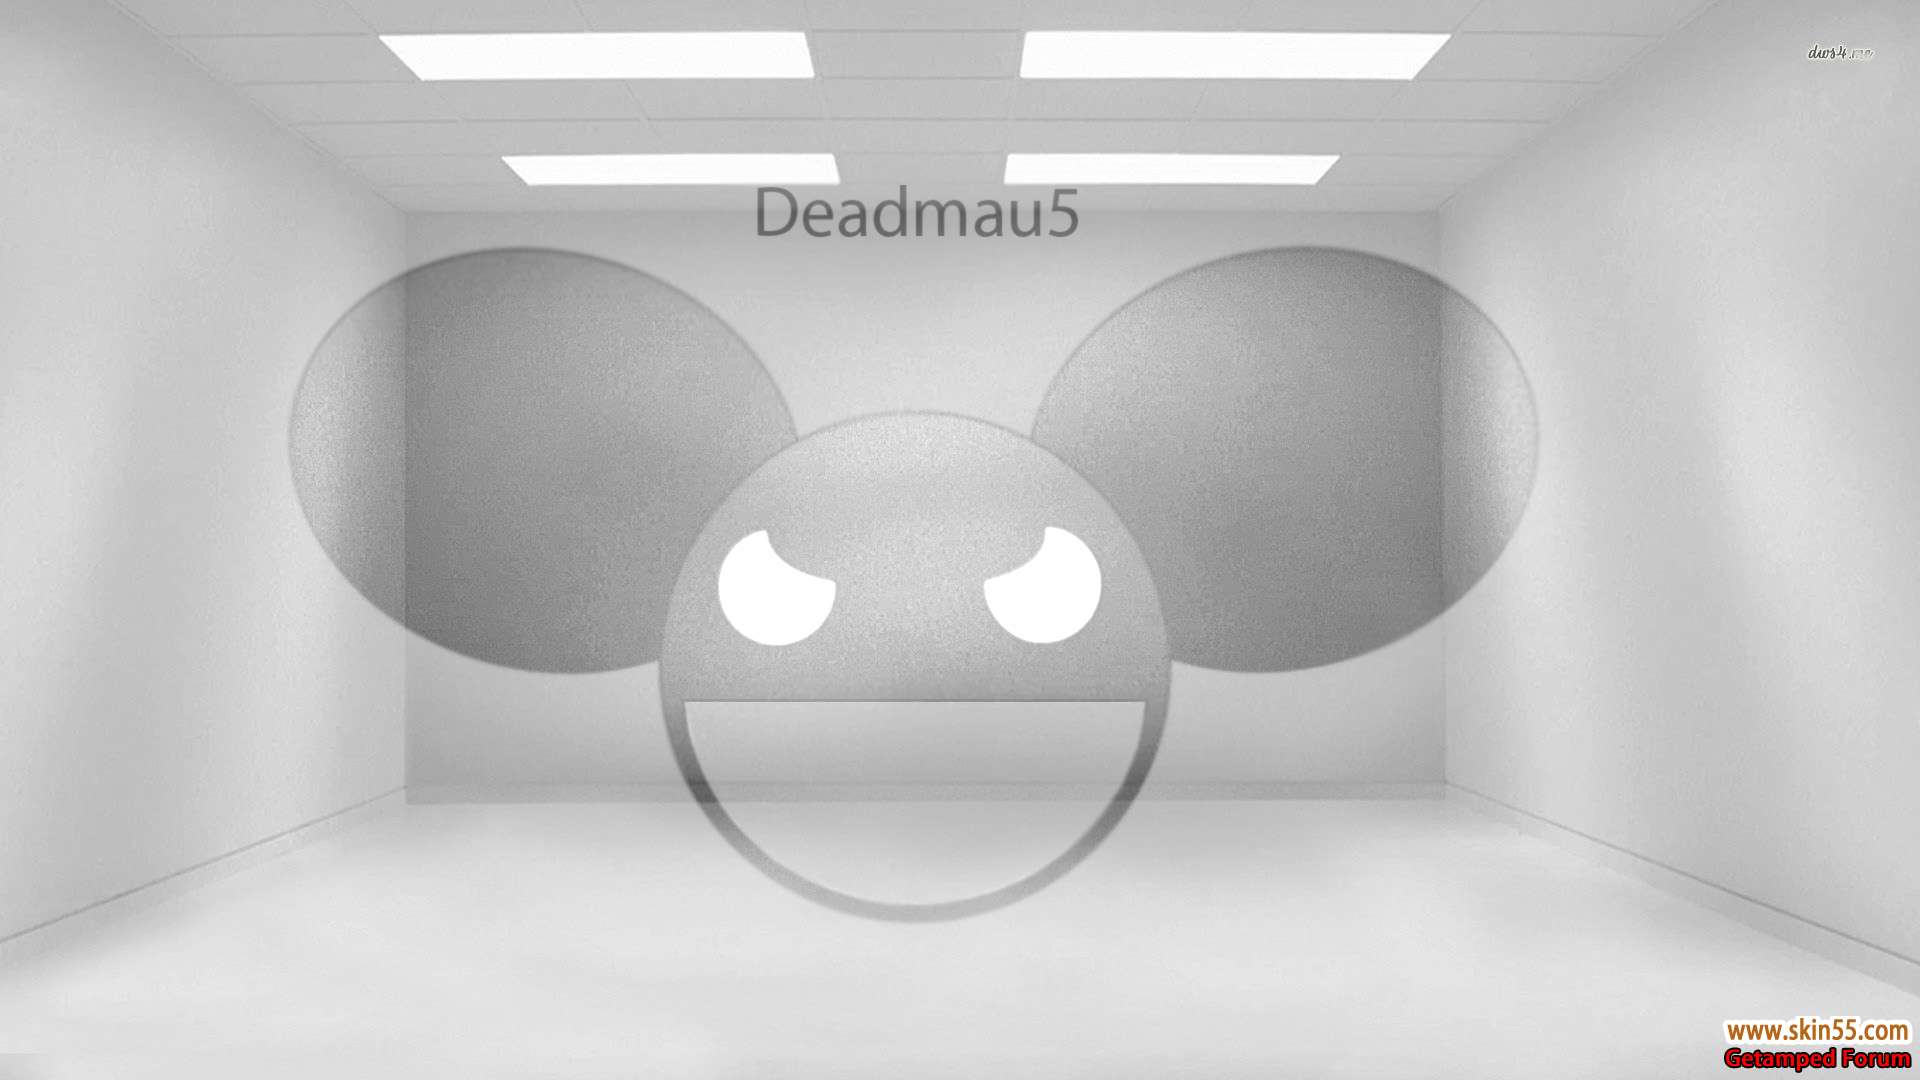 Deadmau5 whiteroom.jpg